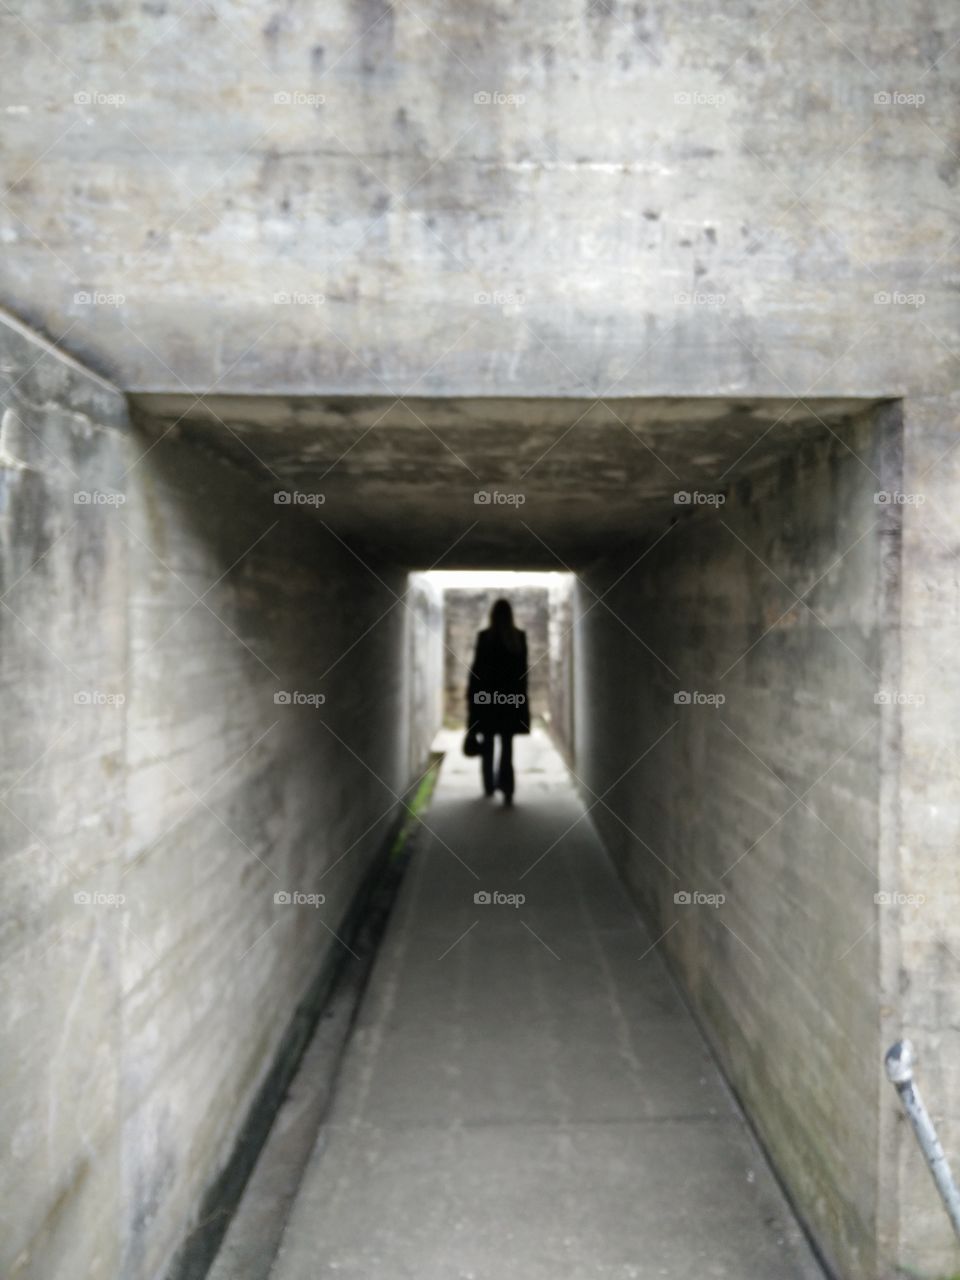 The dark tunnel